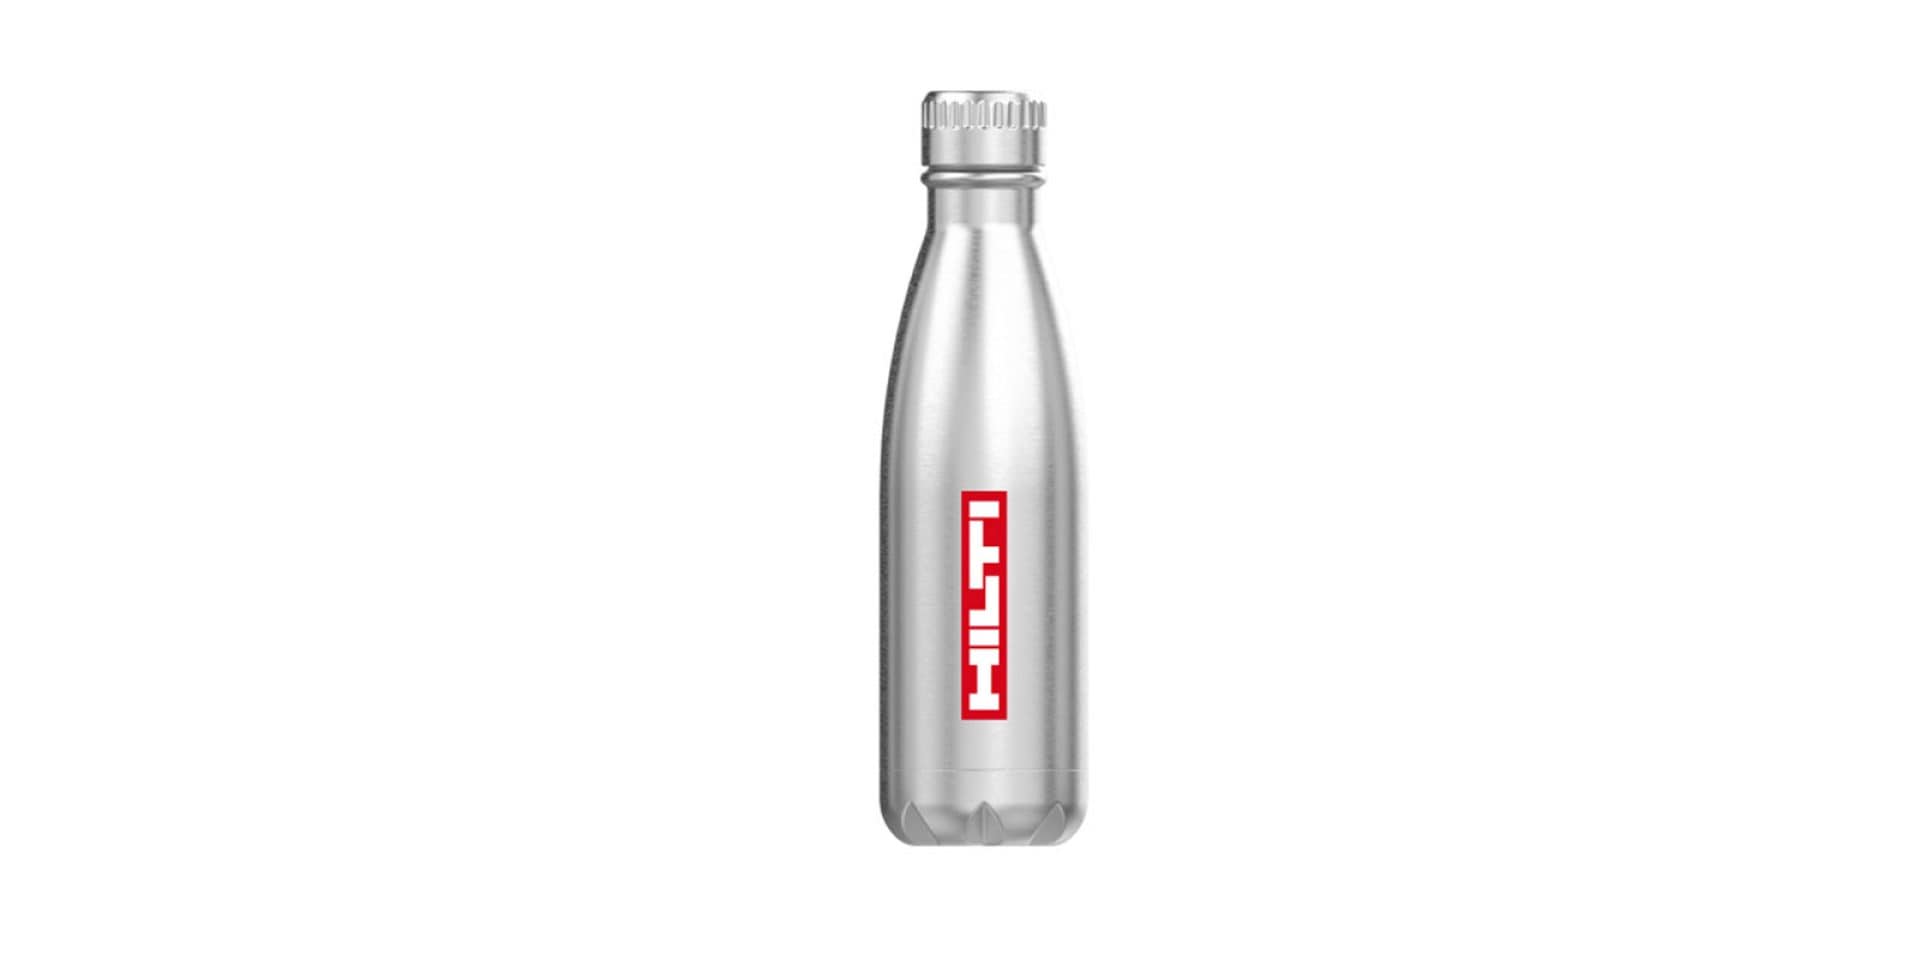 Hilti branded water bottle